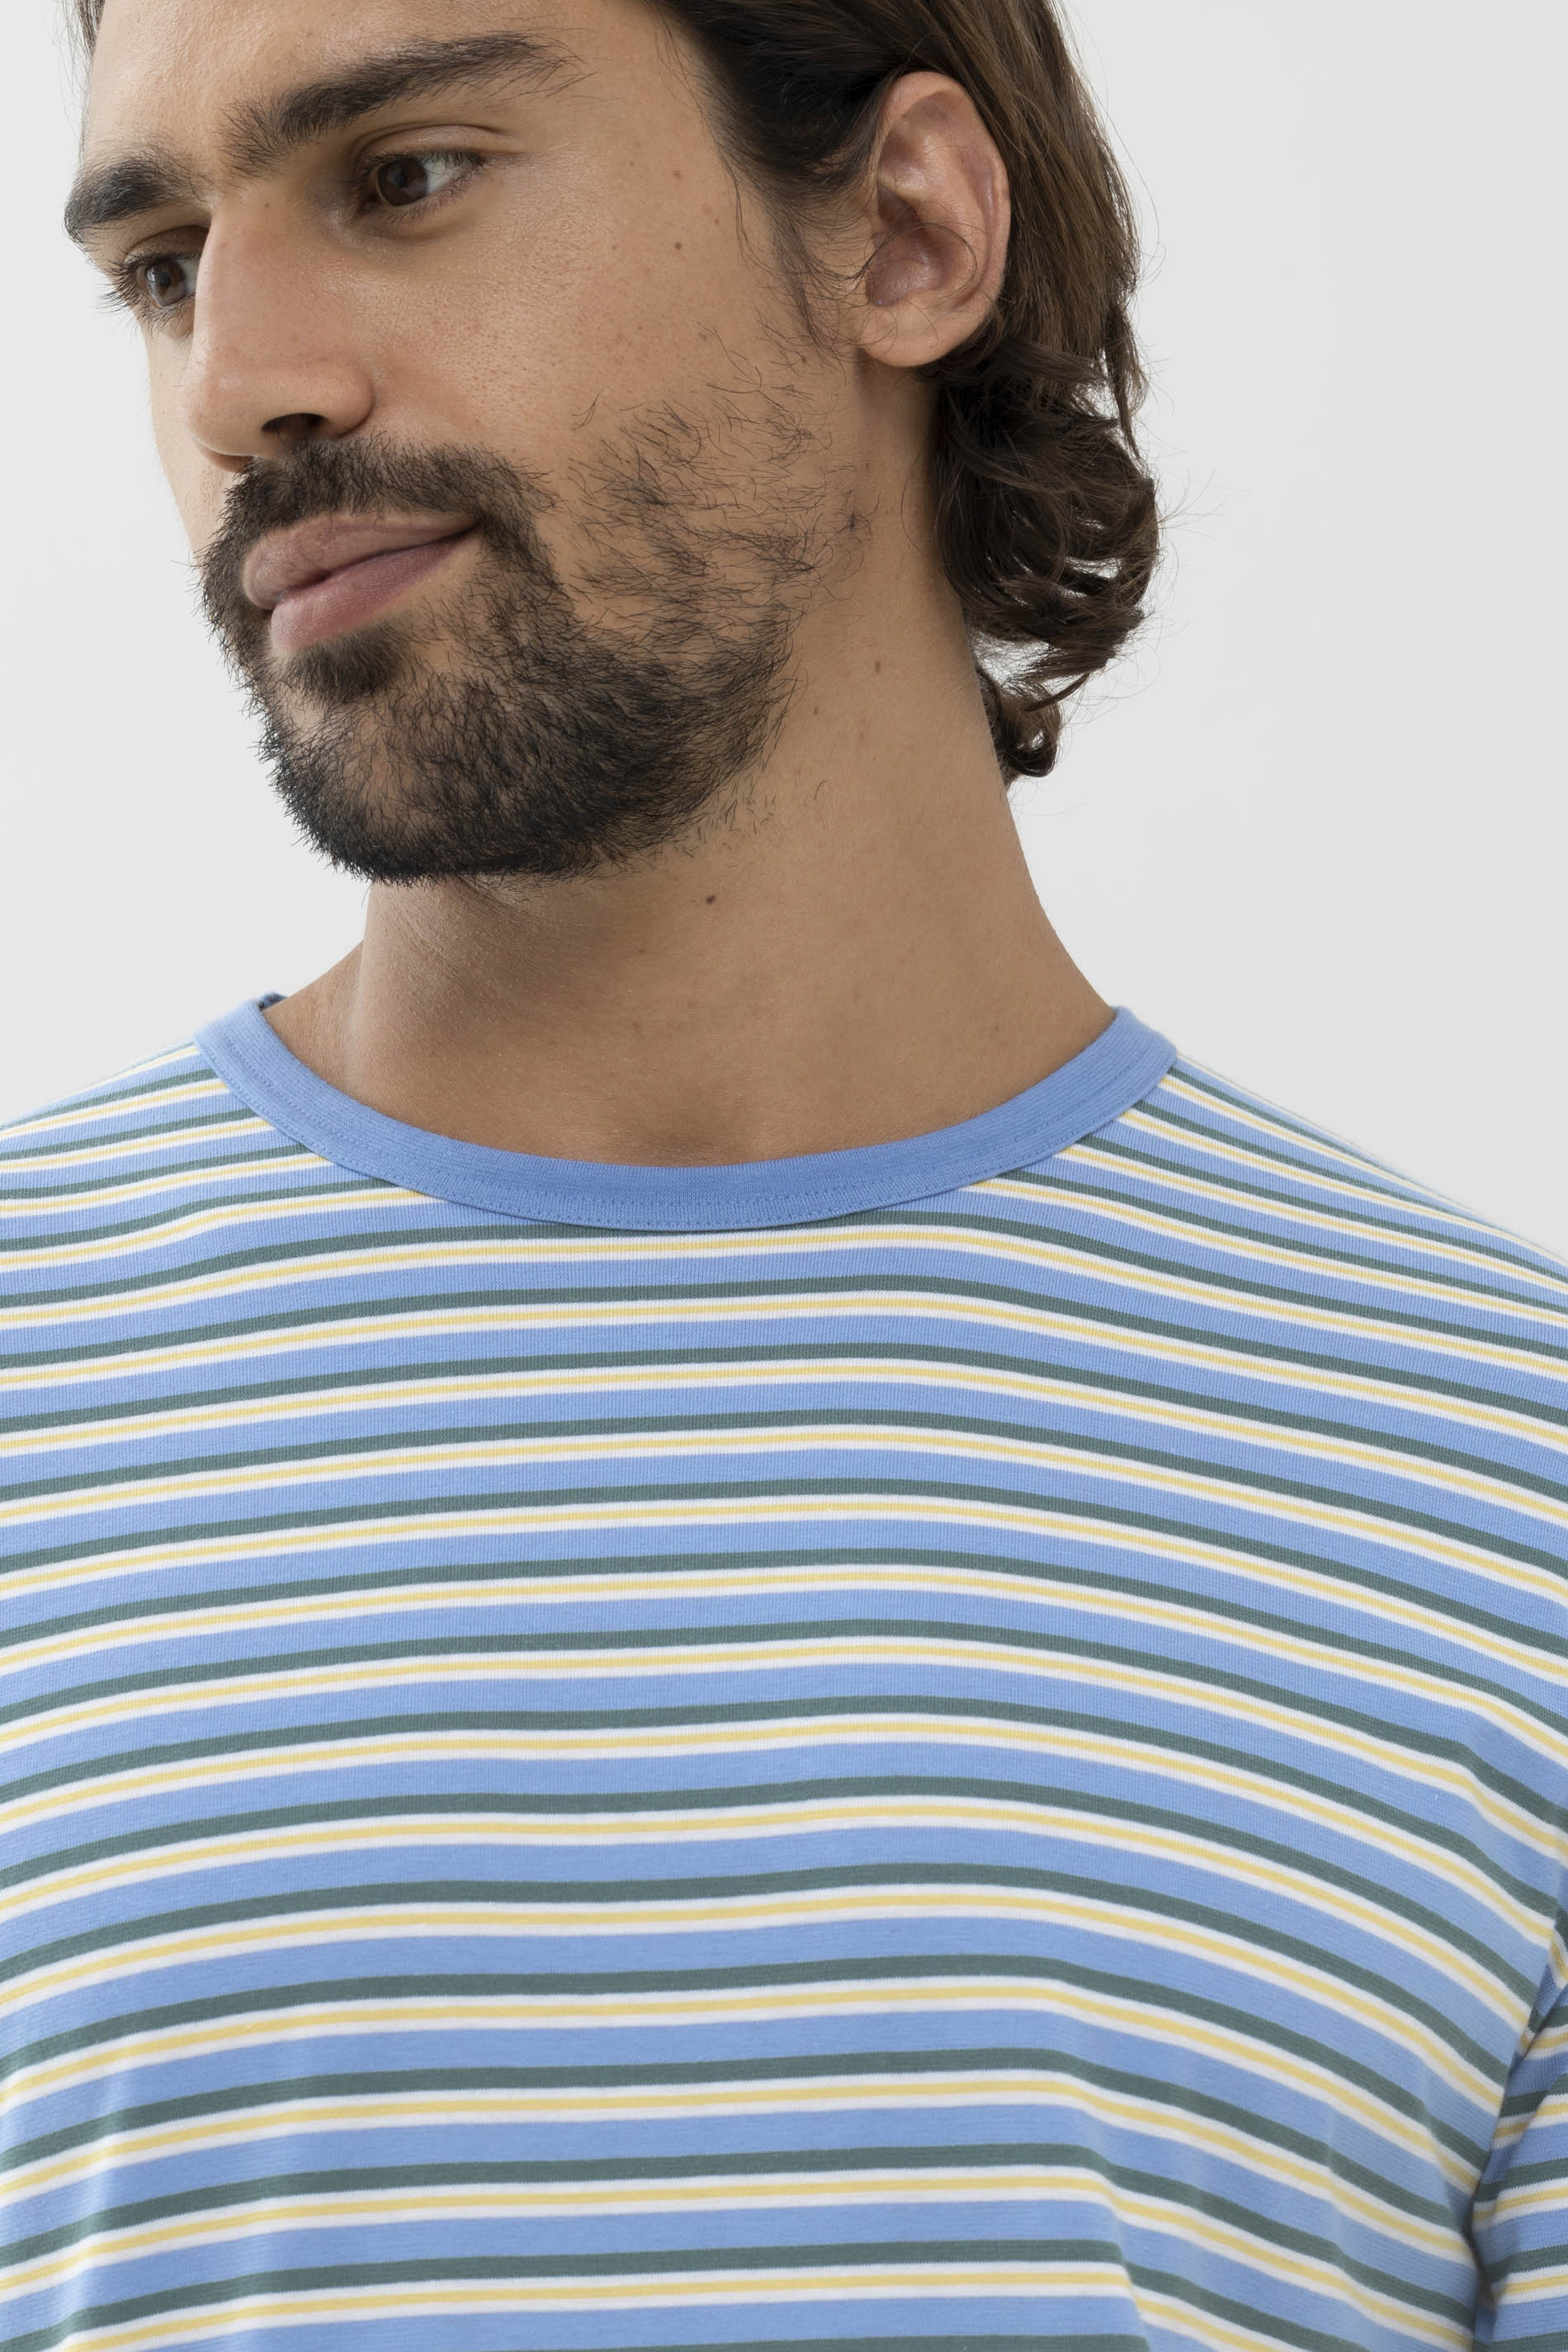 Pyjamas Serie Cross Stripe Detail View 01 | mey®